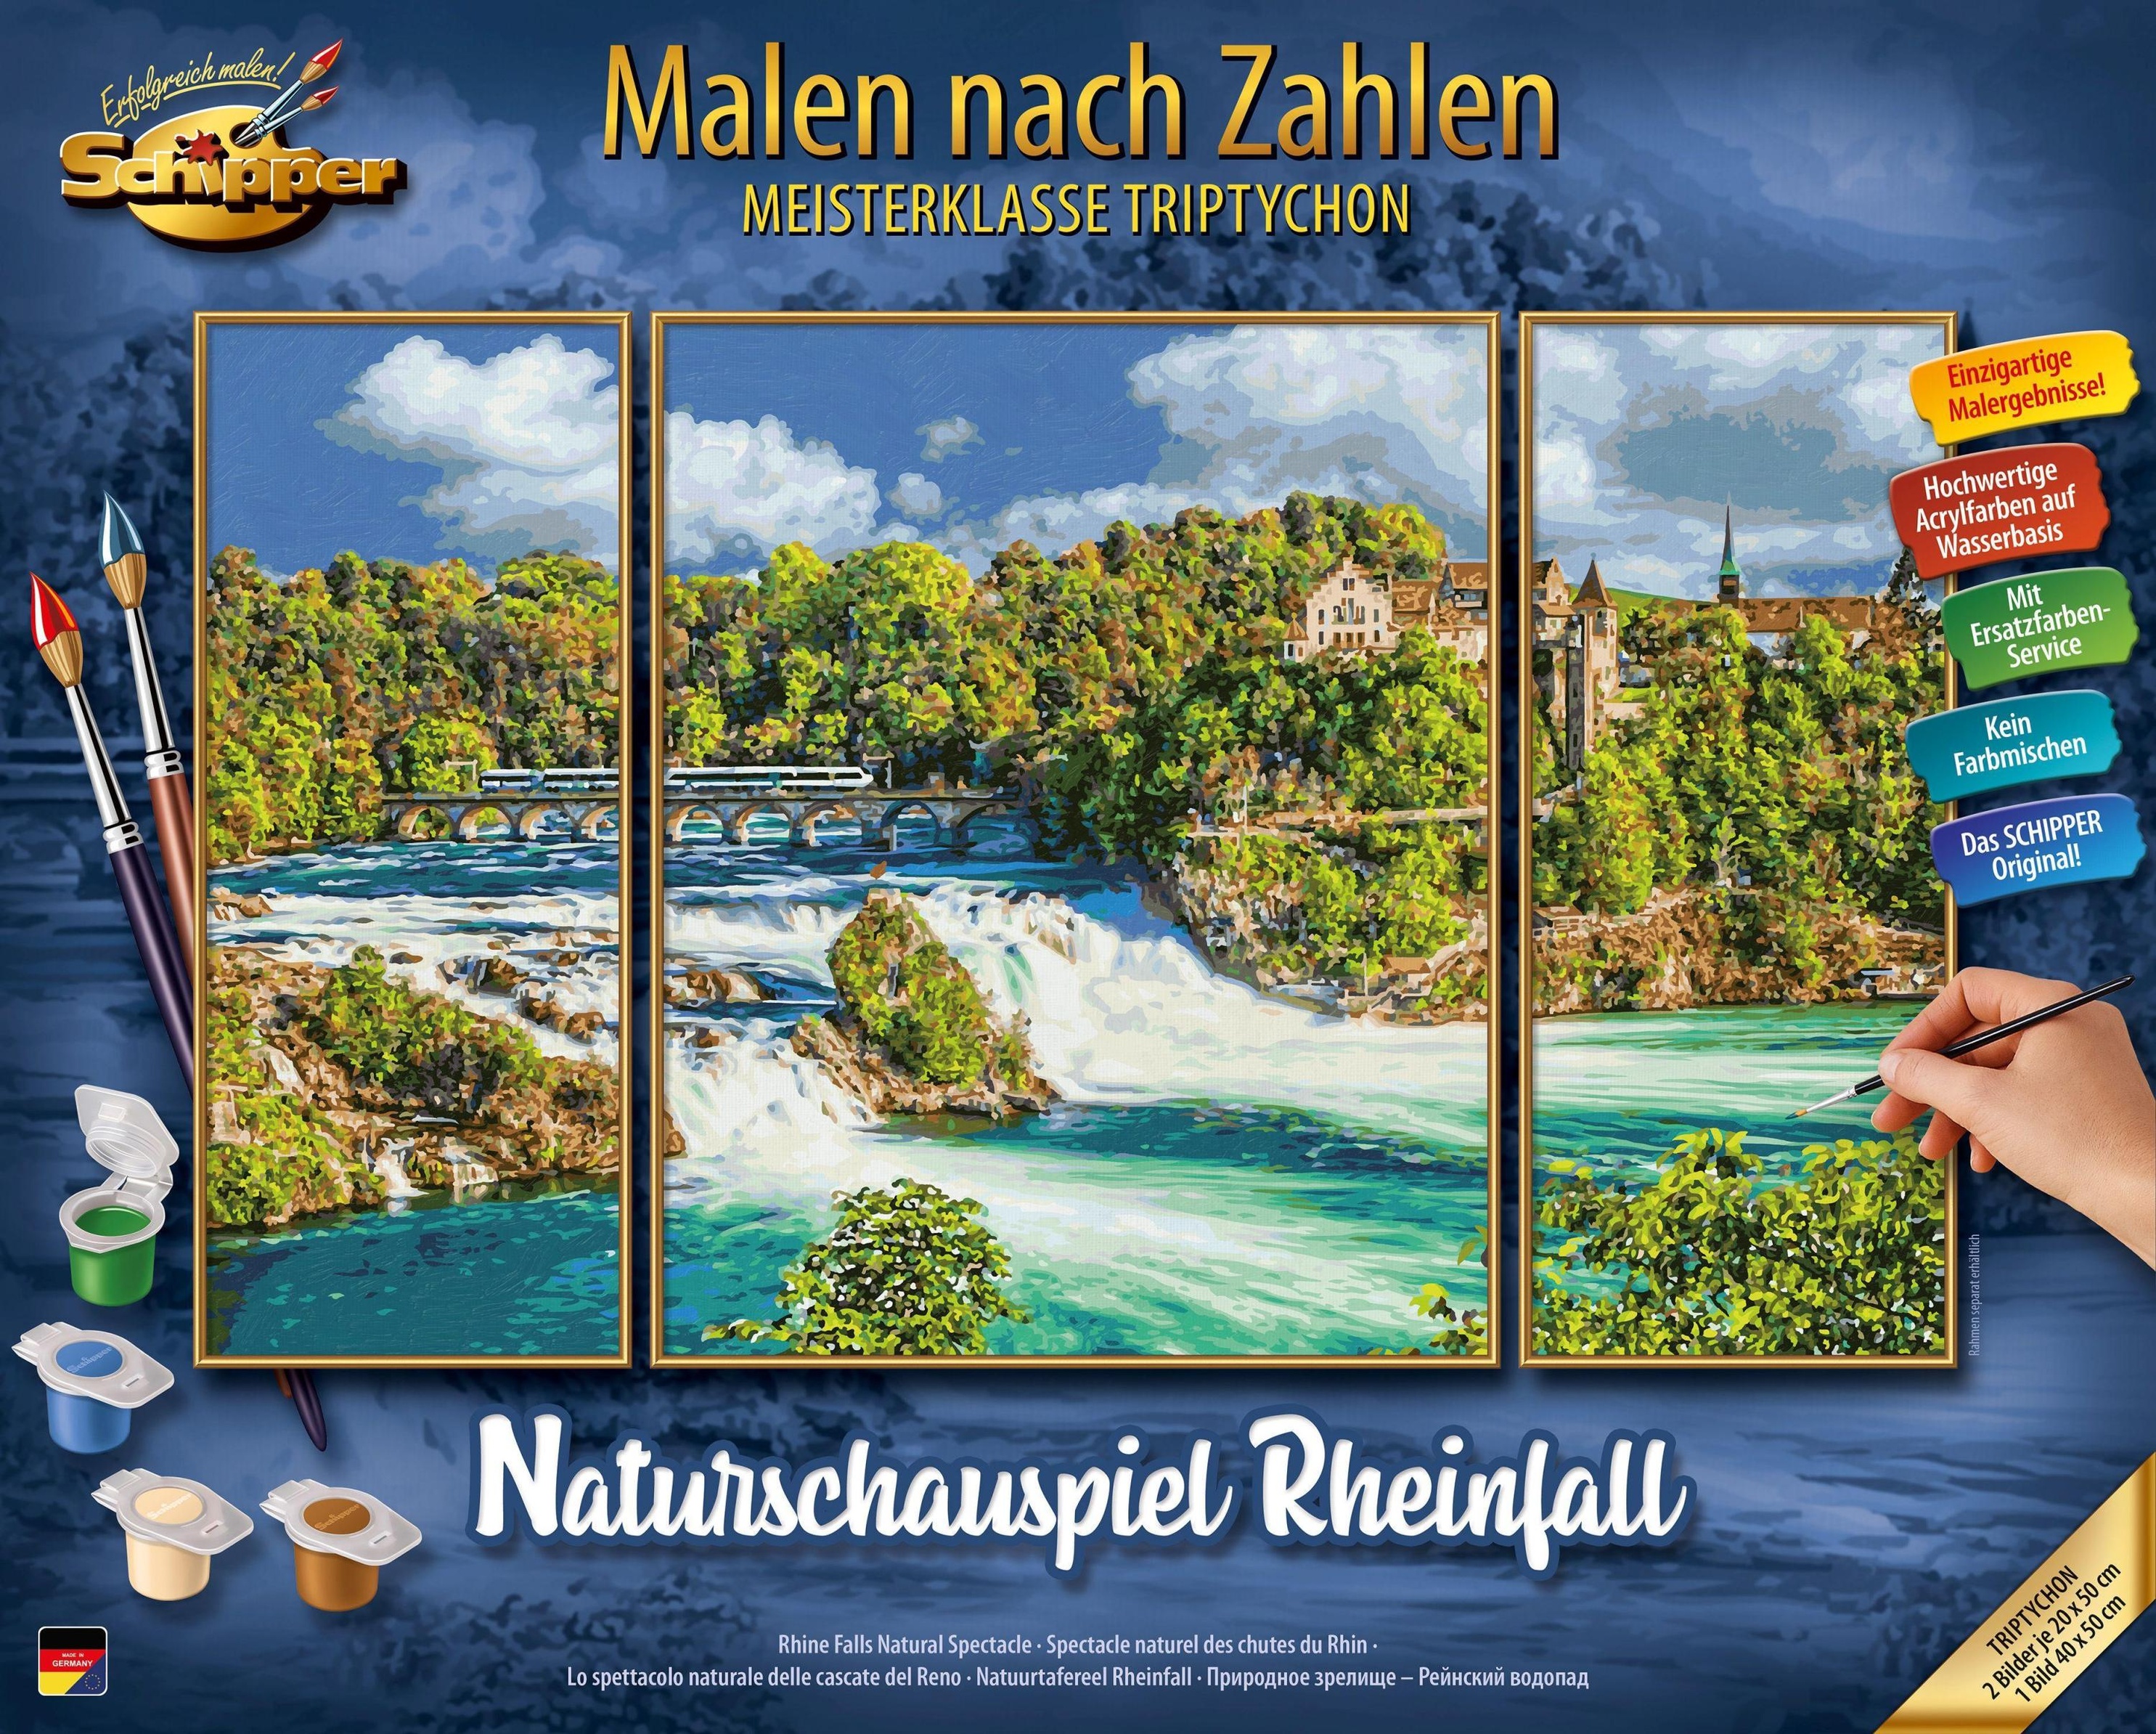 Rheinfall Zahlen nach - Malen Naturschauspiel